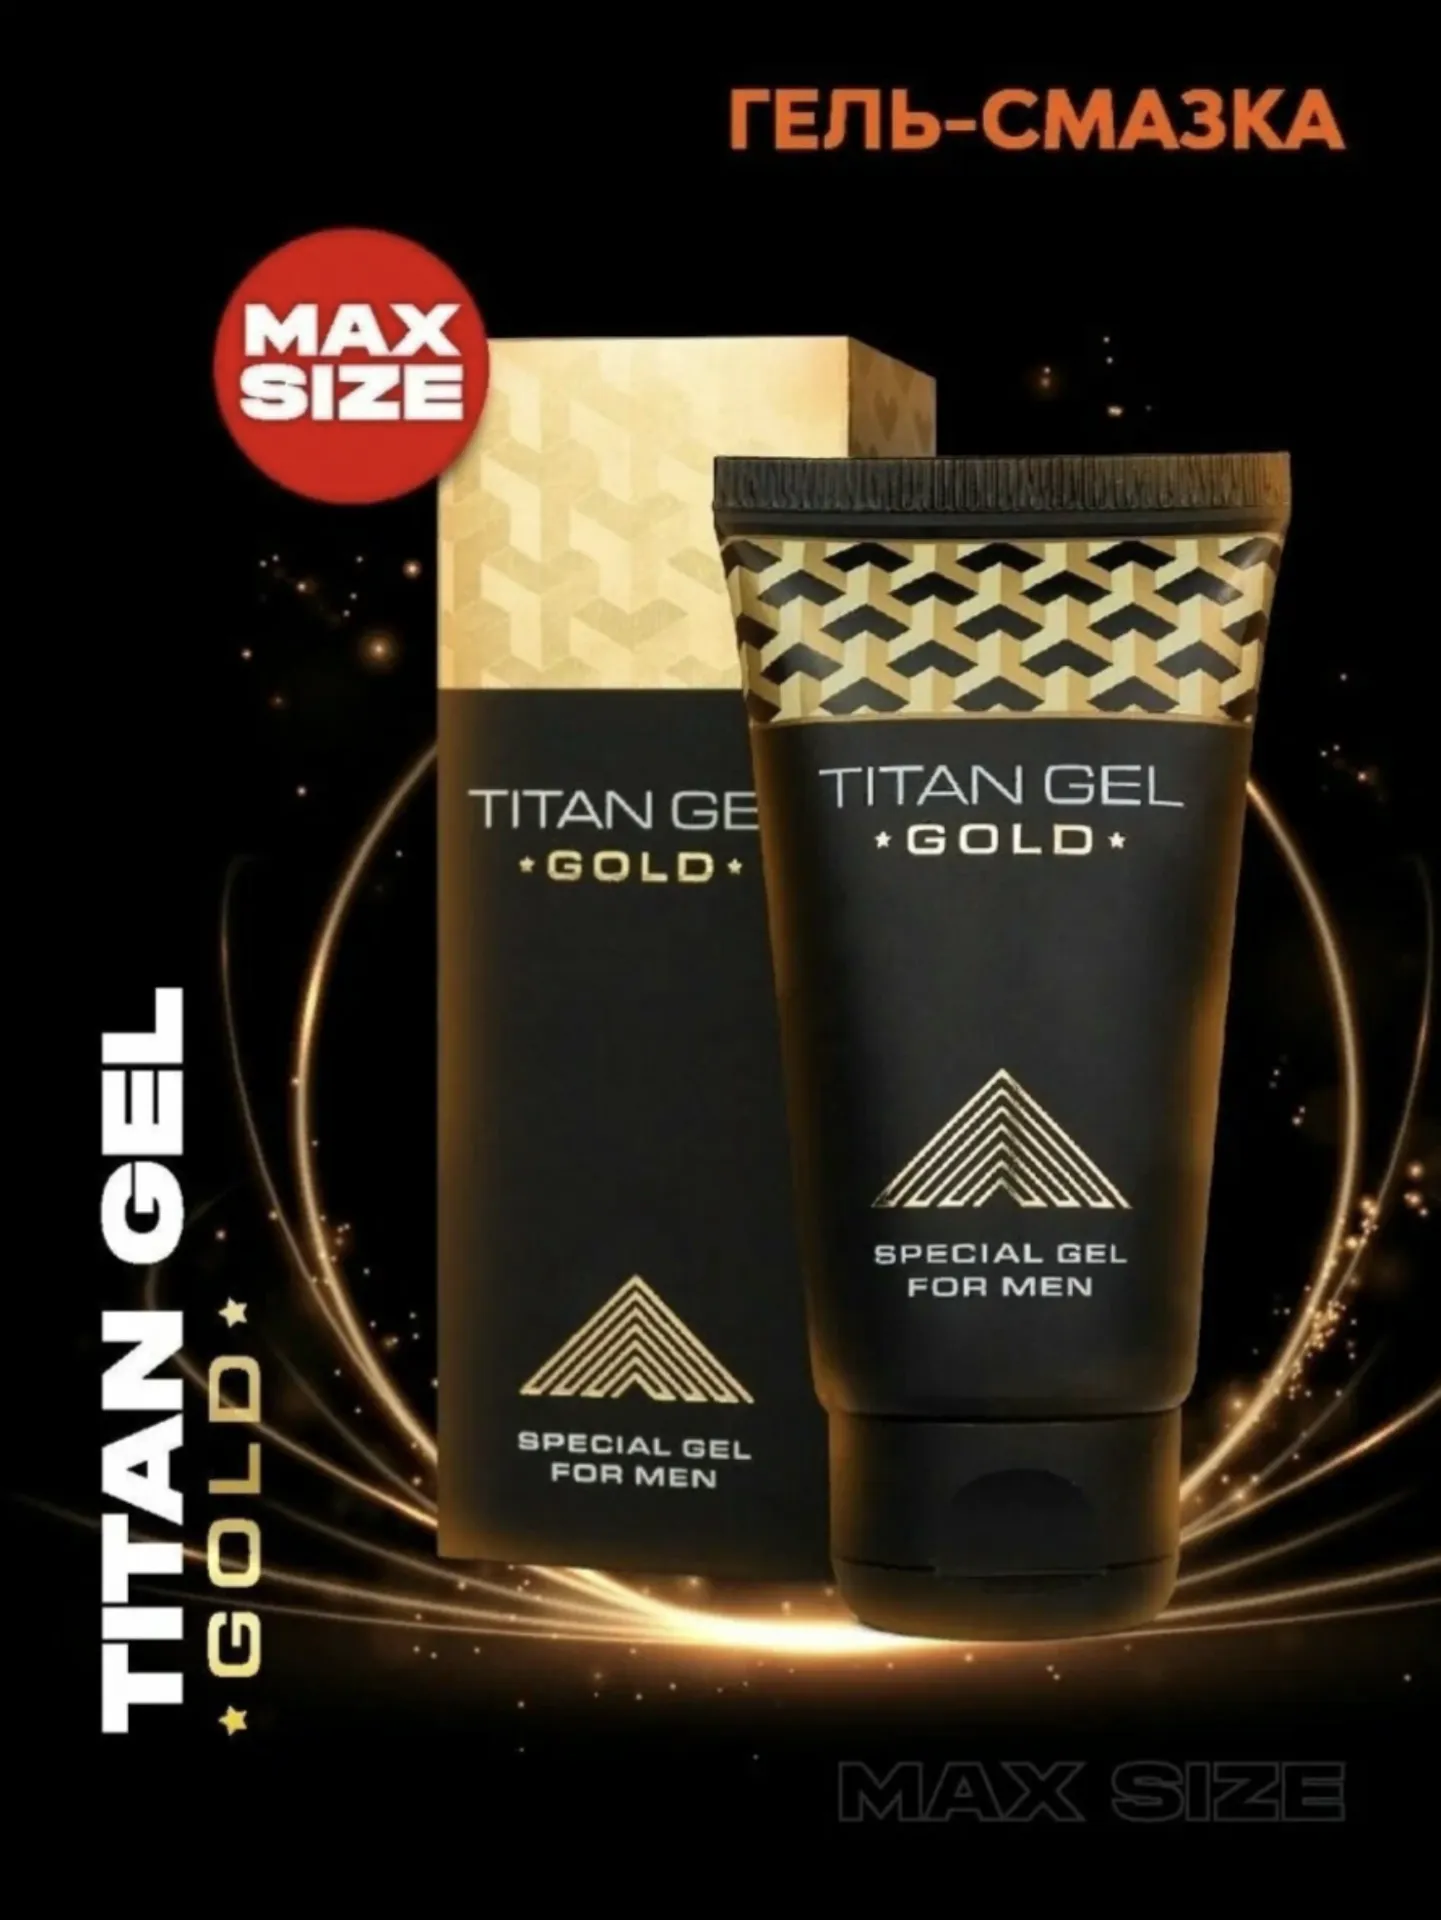 Titan Gel Gold erkaklar uchun maxsus krem.#1